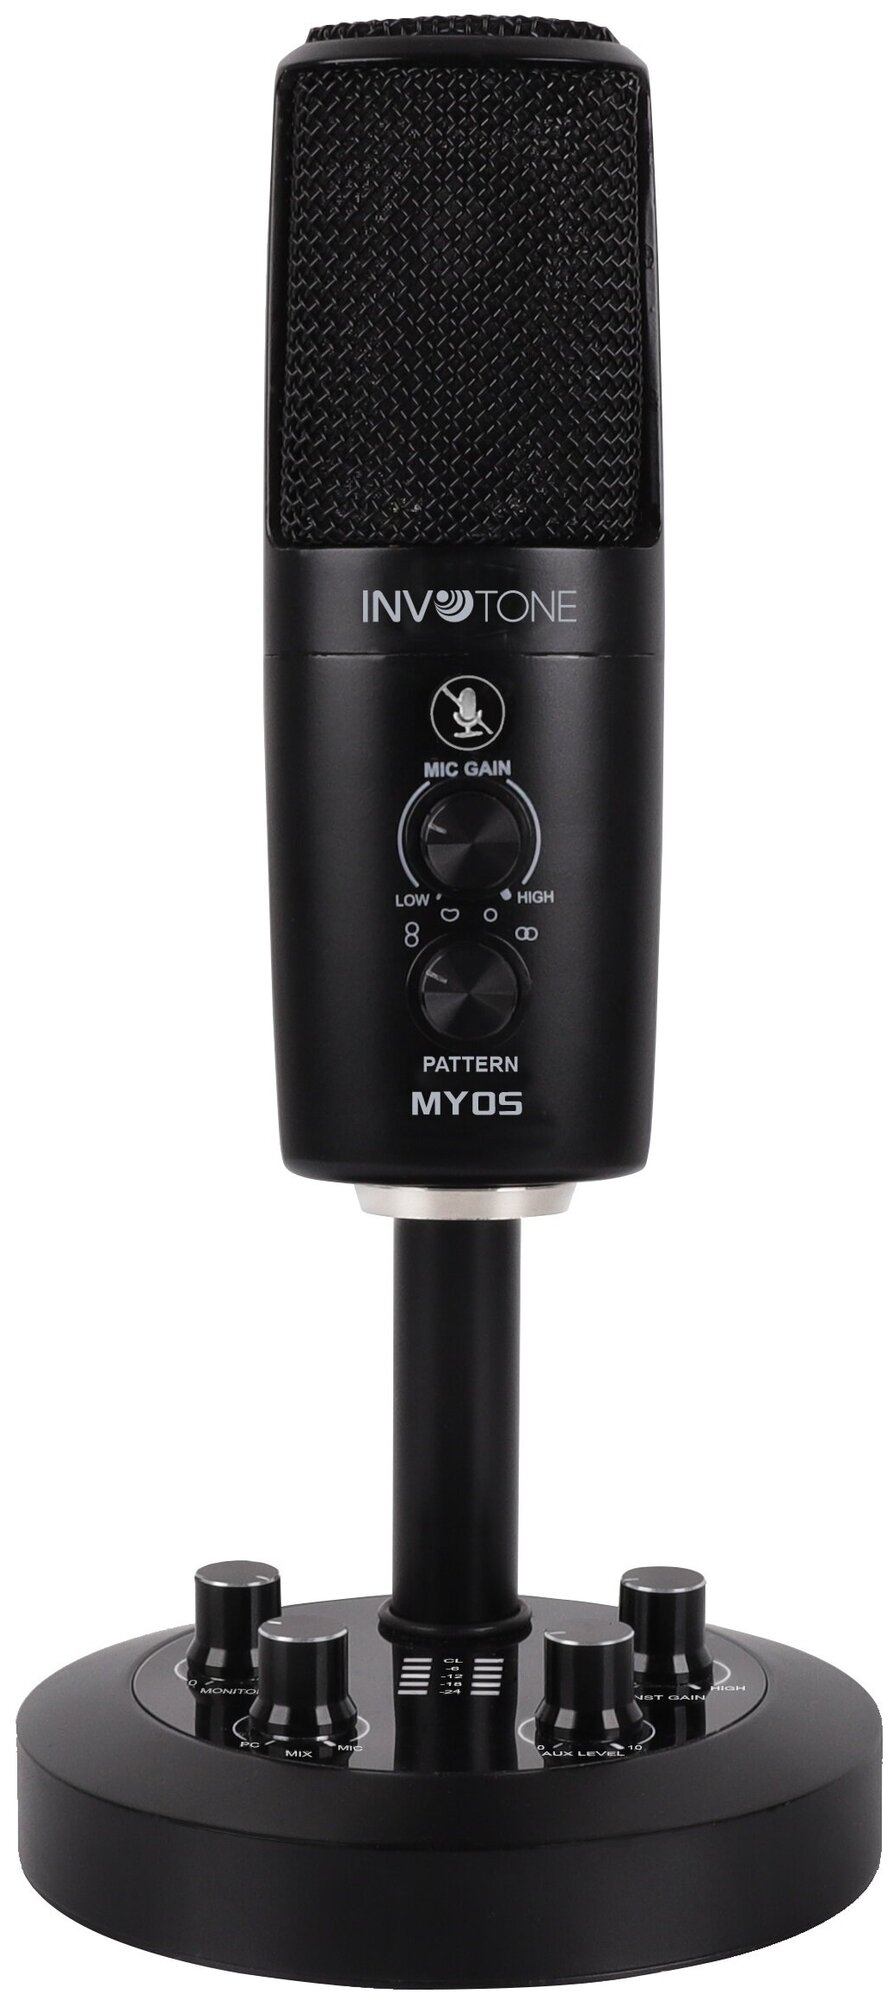 Микрофон конденсаторный INVOTONE MYOS настольный 3 капсюля, USB интерфейс, 4 диаграммы направленности